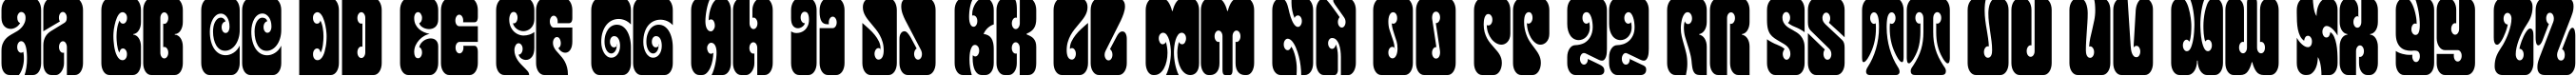 Пример написания английского алфавита шрифтом Terpsichora